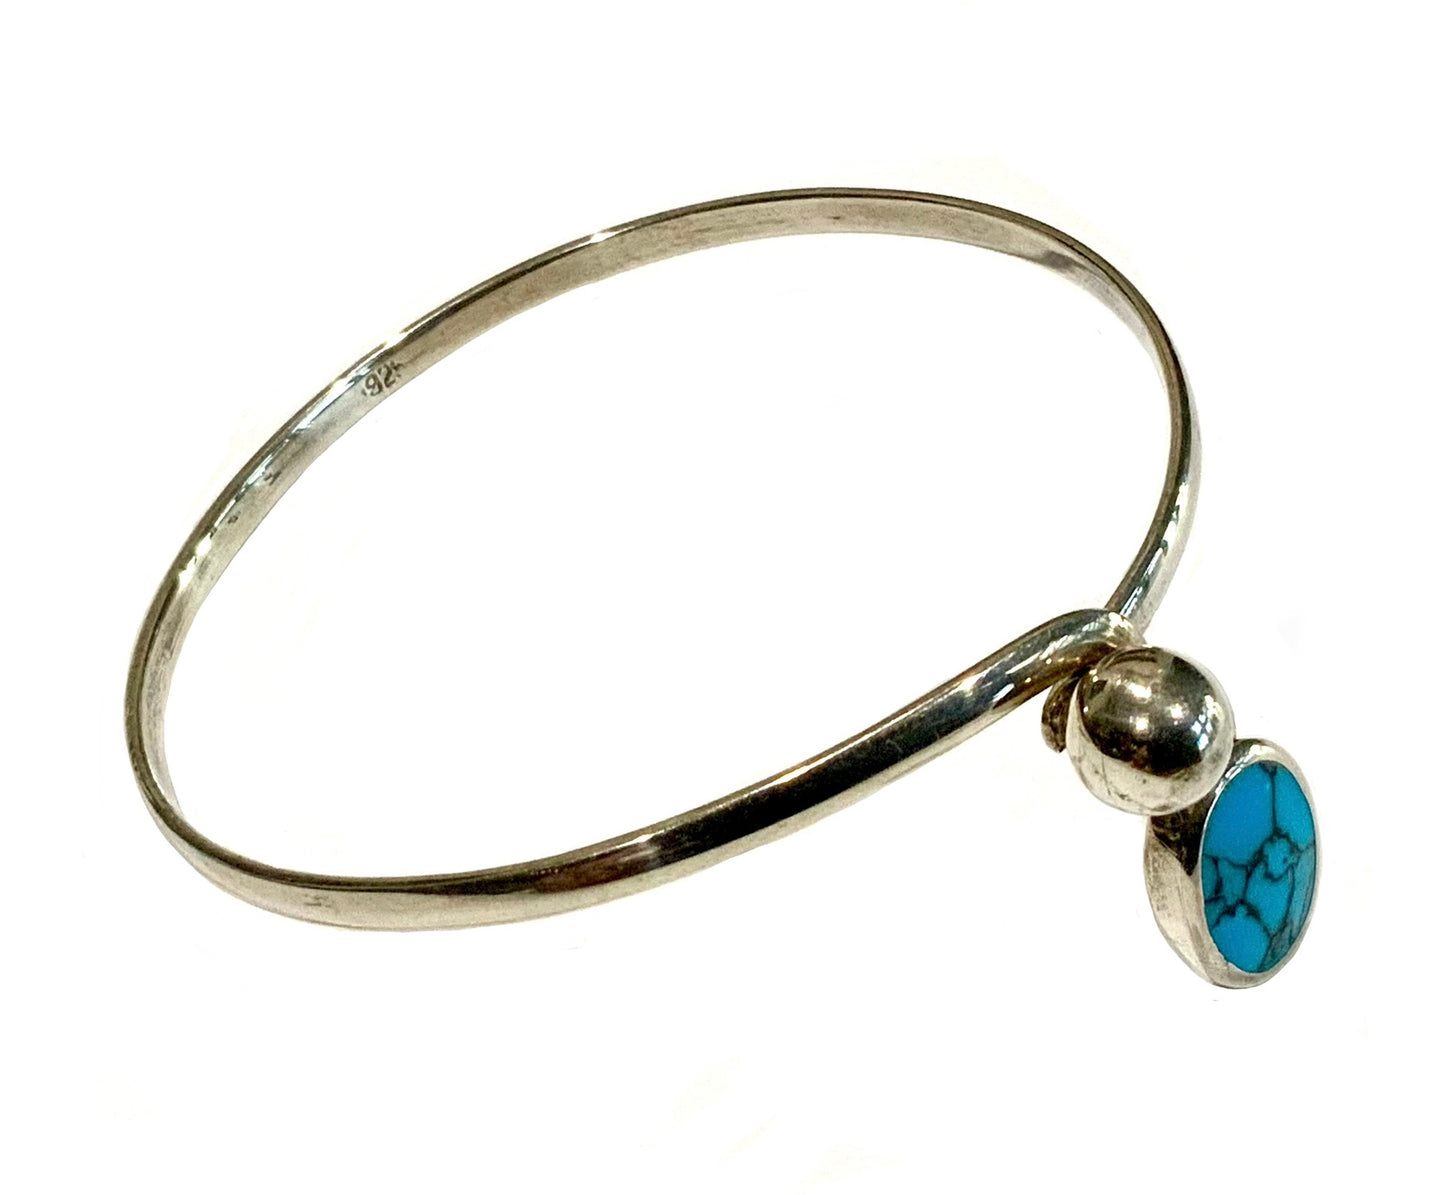 925 Sterling Silver & Turquoise Modernist Bangle Bracelet